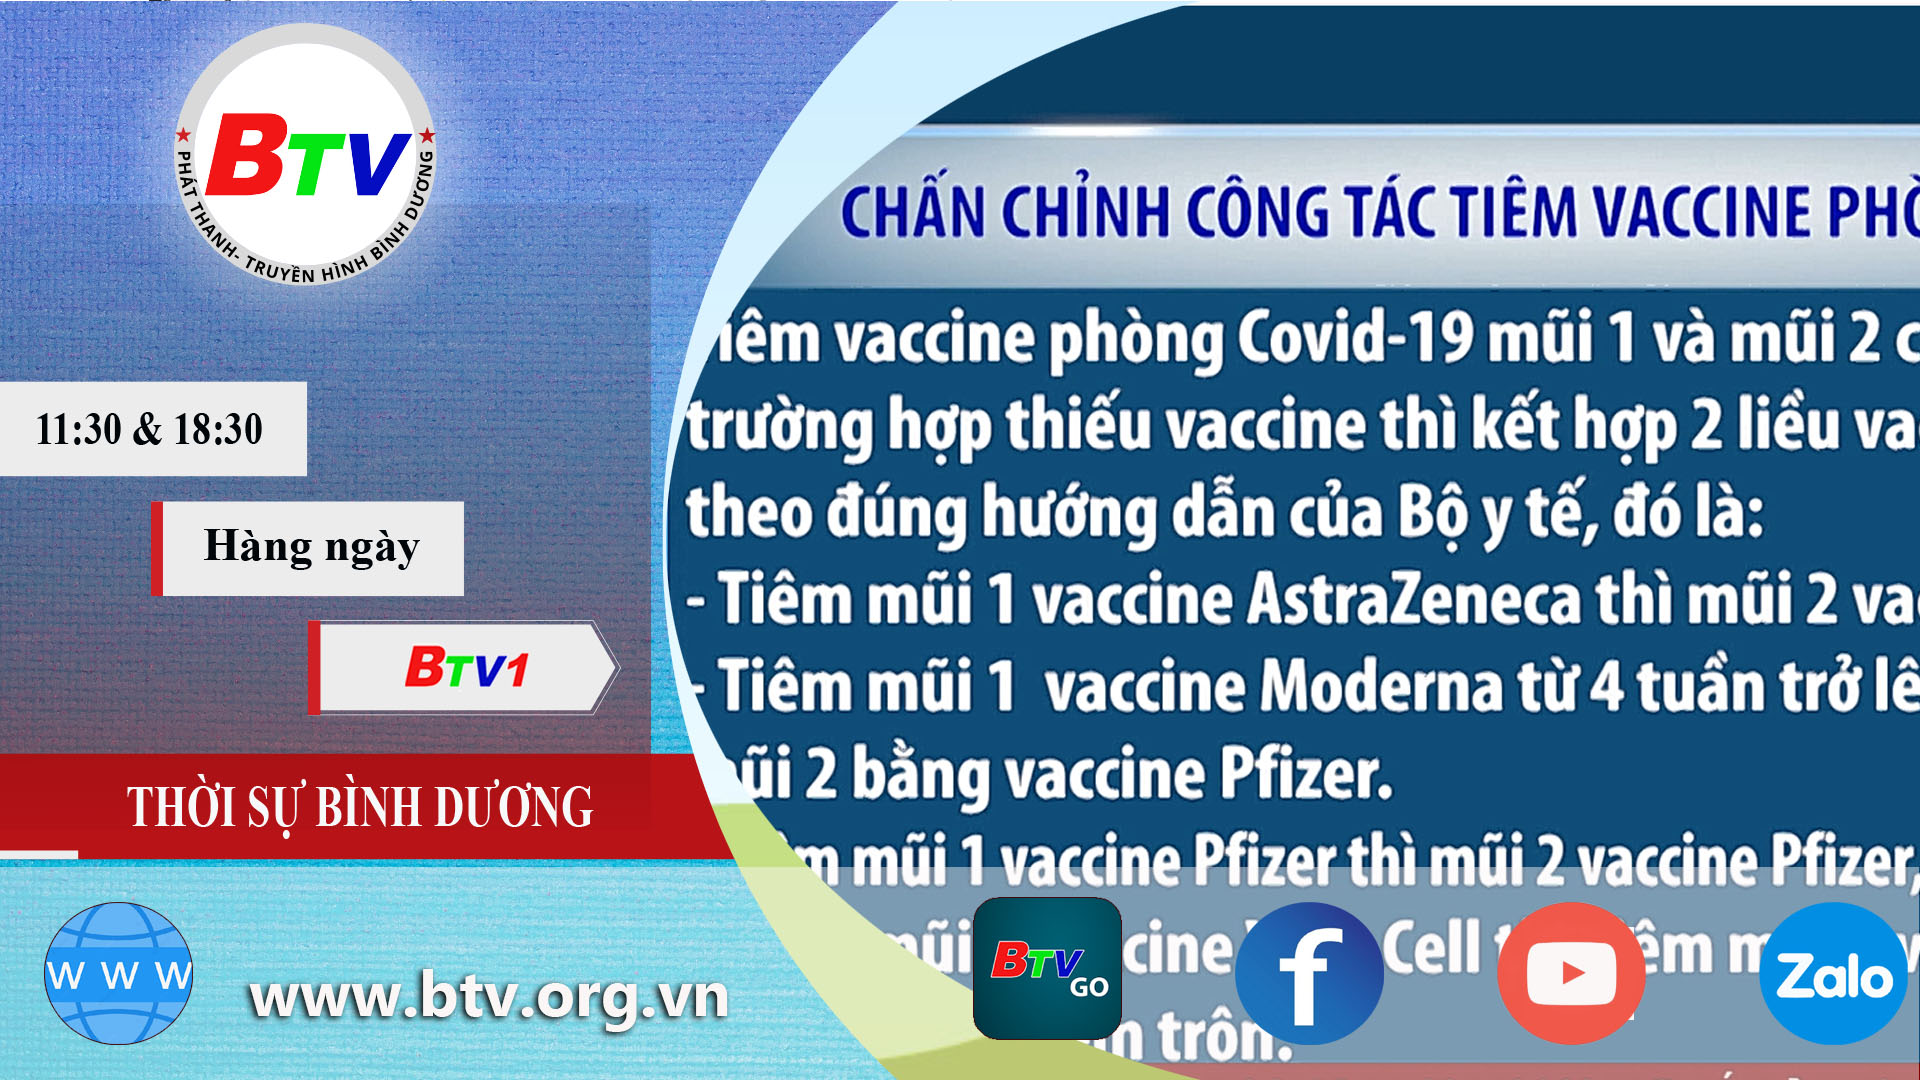 Chấn chỉnh công tác tiêm vaccine phòng Covid-19